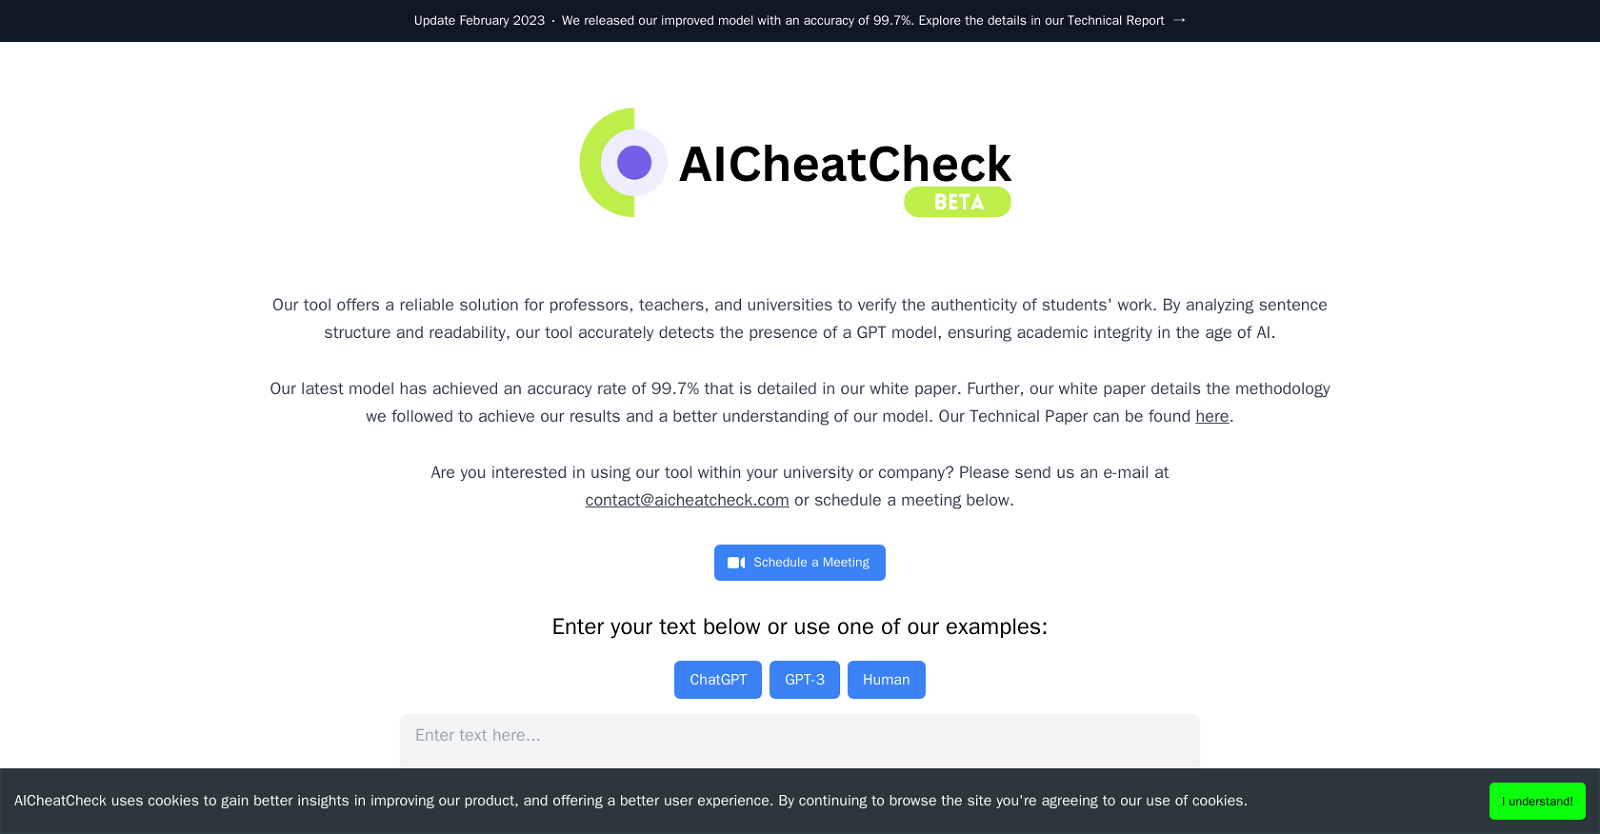 AICheatCheck website